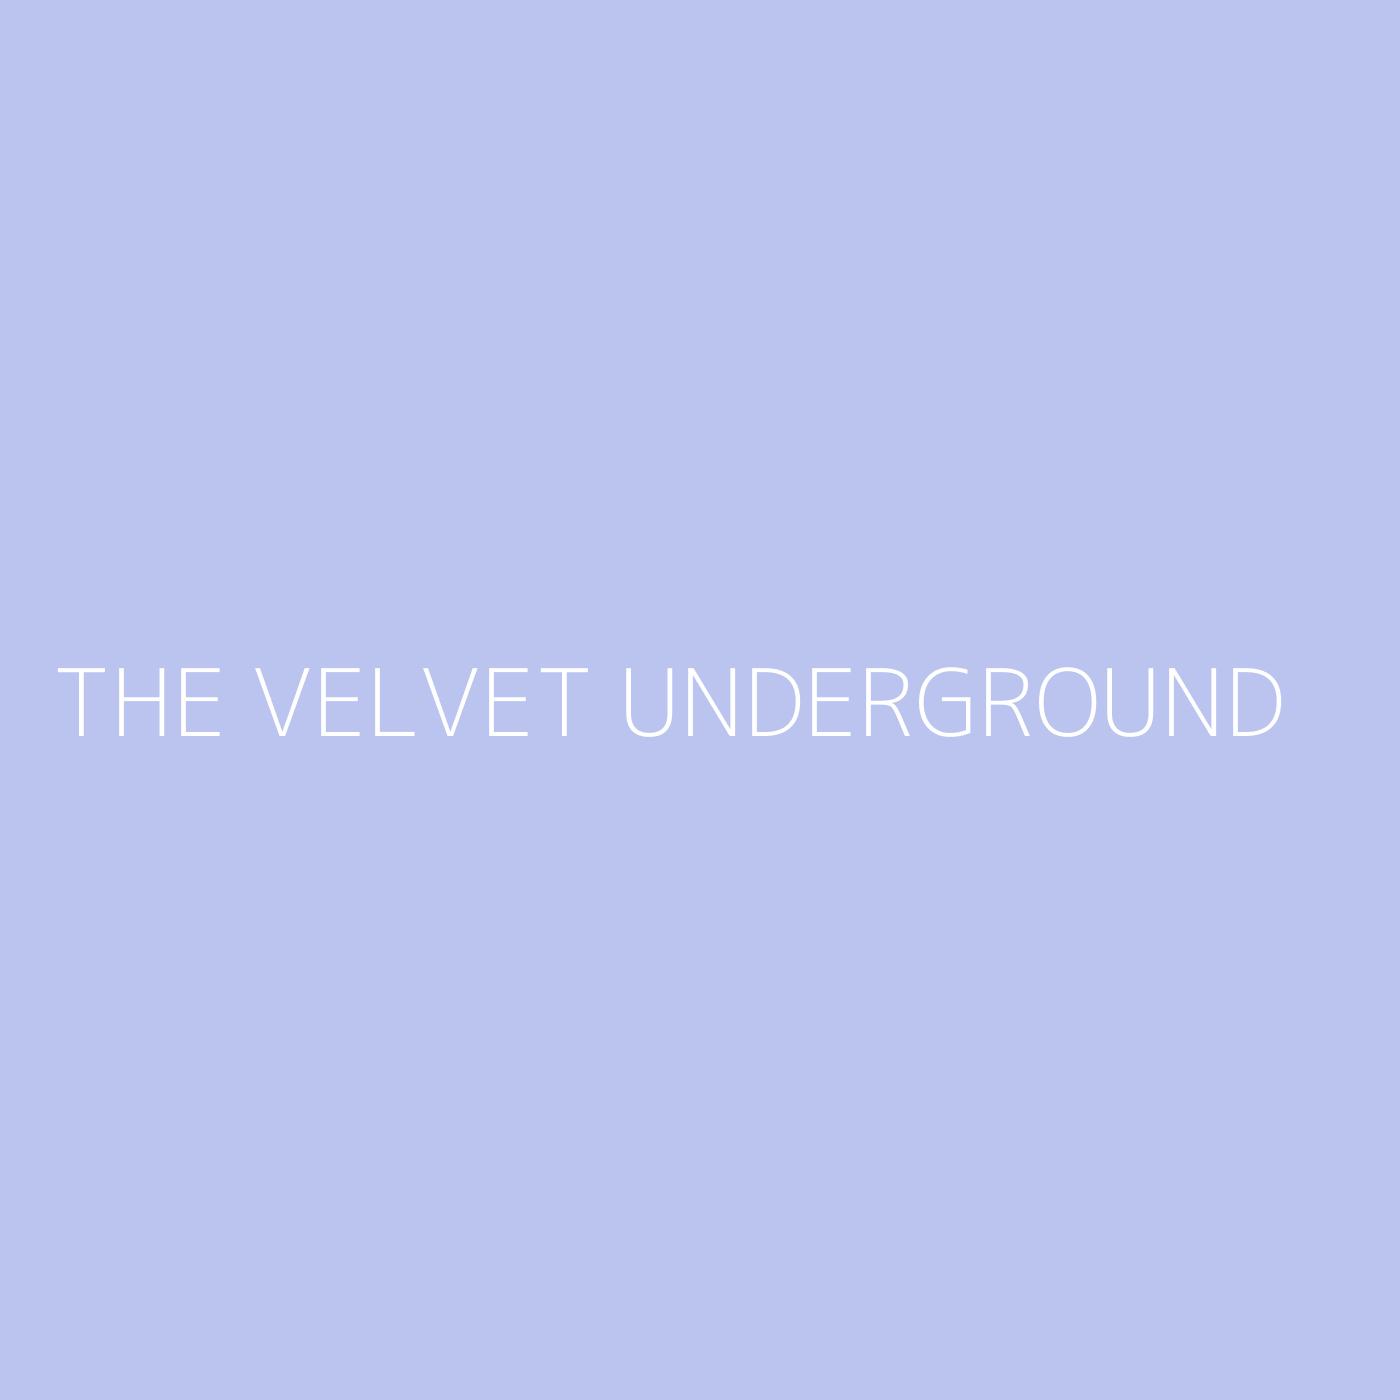 The Velvet Underground Playlist Artwork